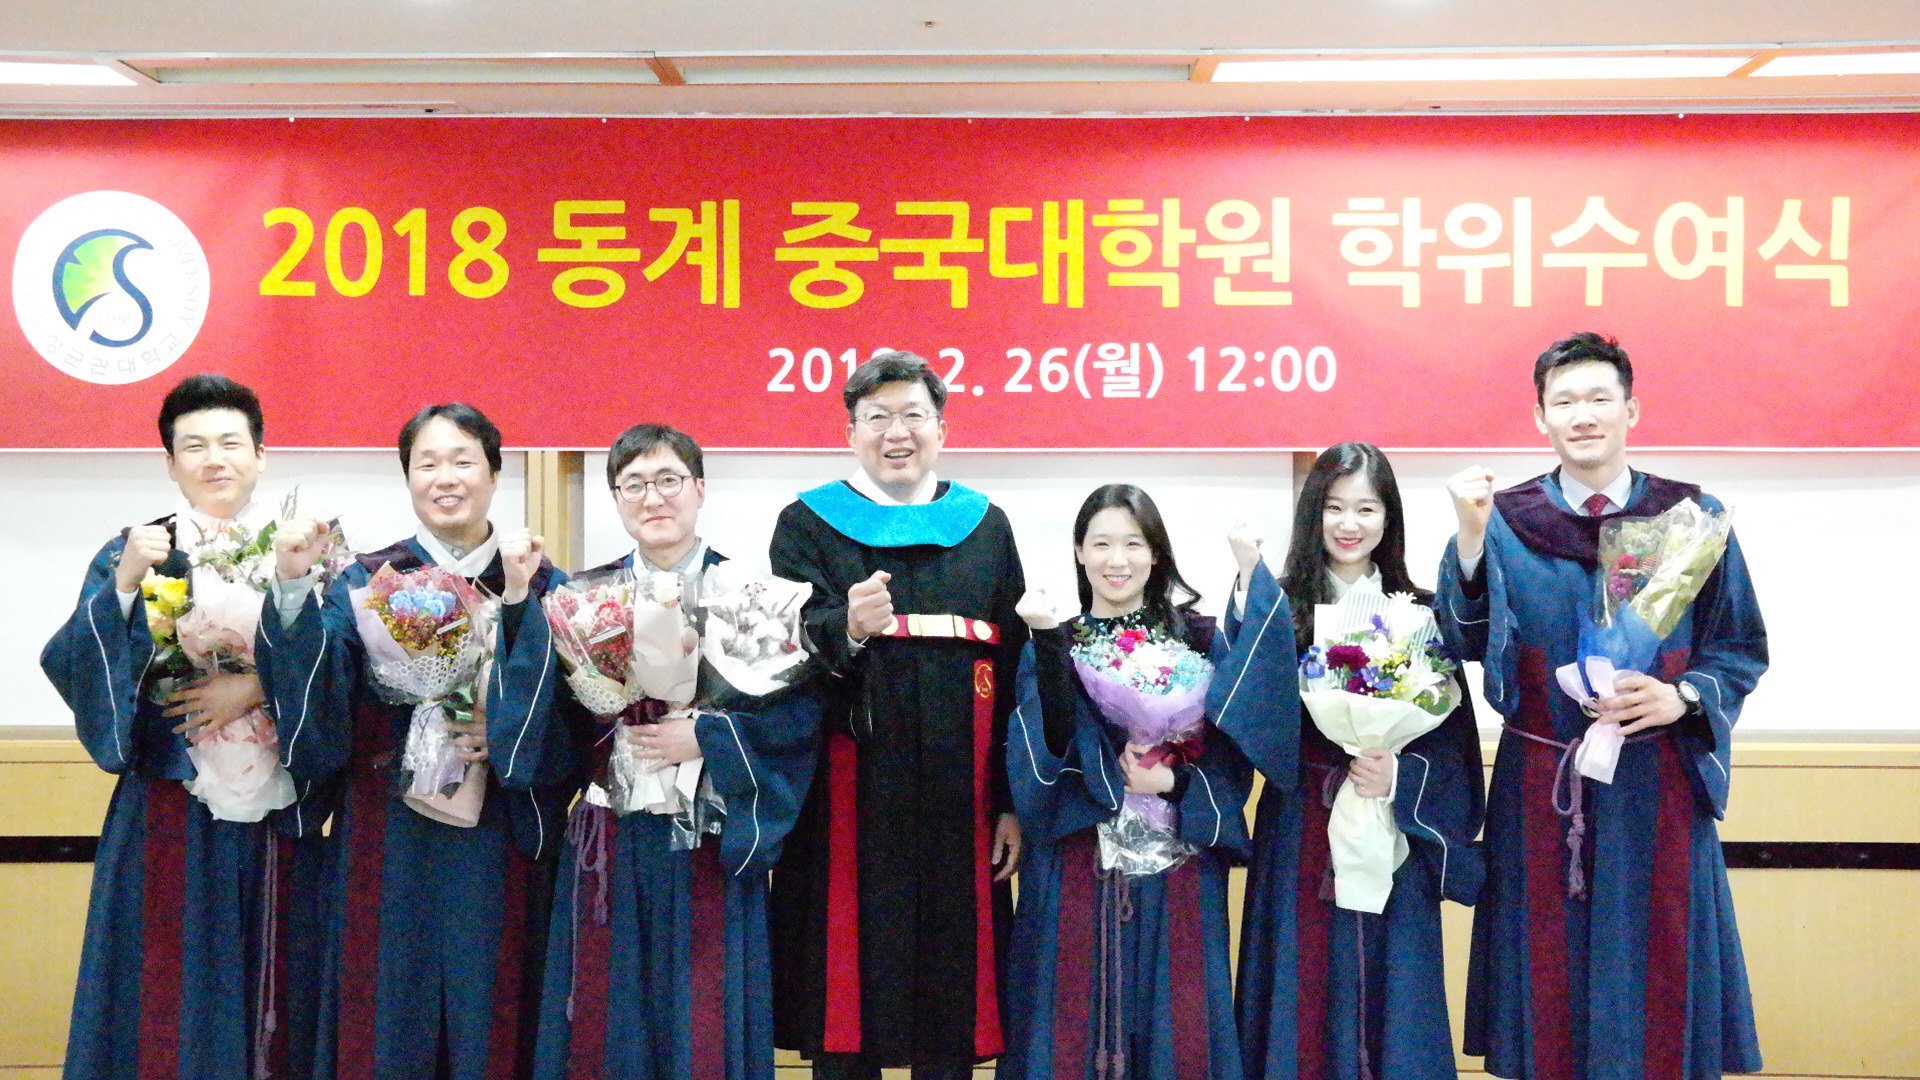 2018년 겨울 중국대학원 학위수여식 개최 